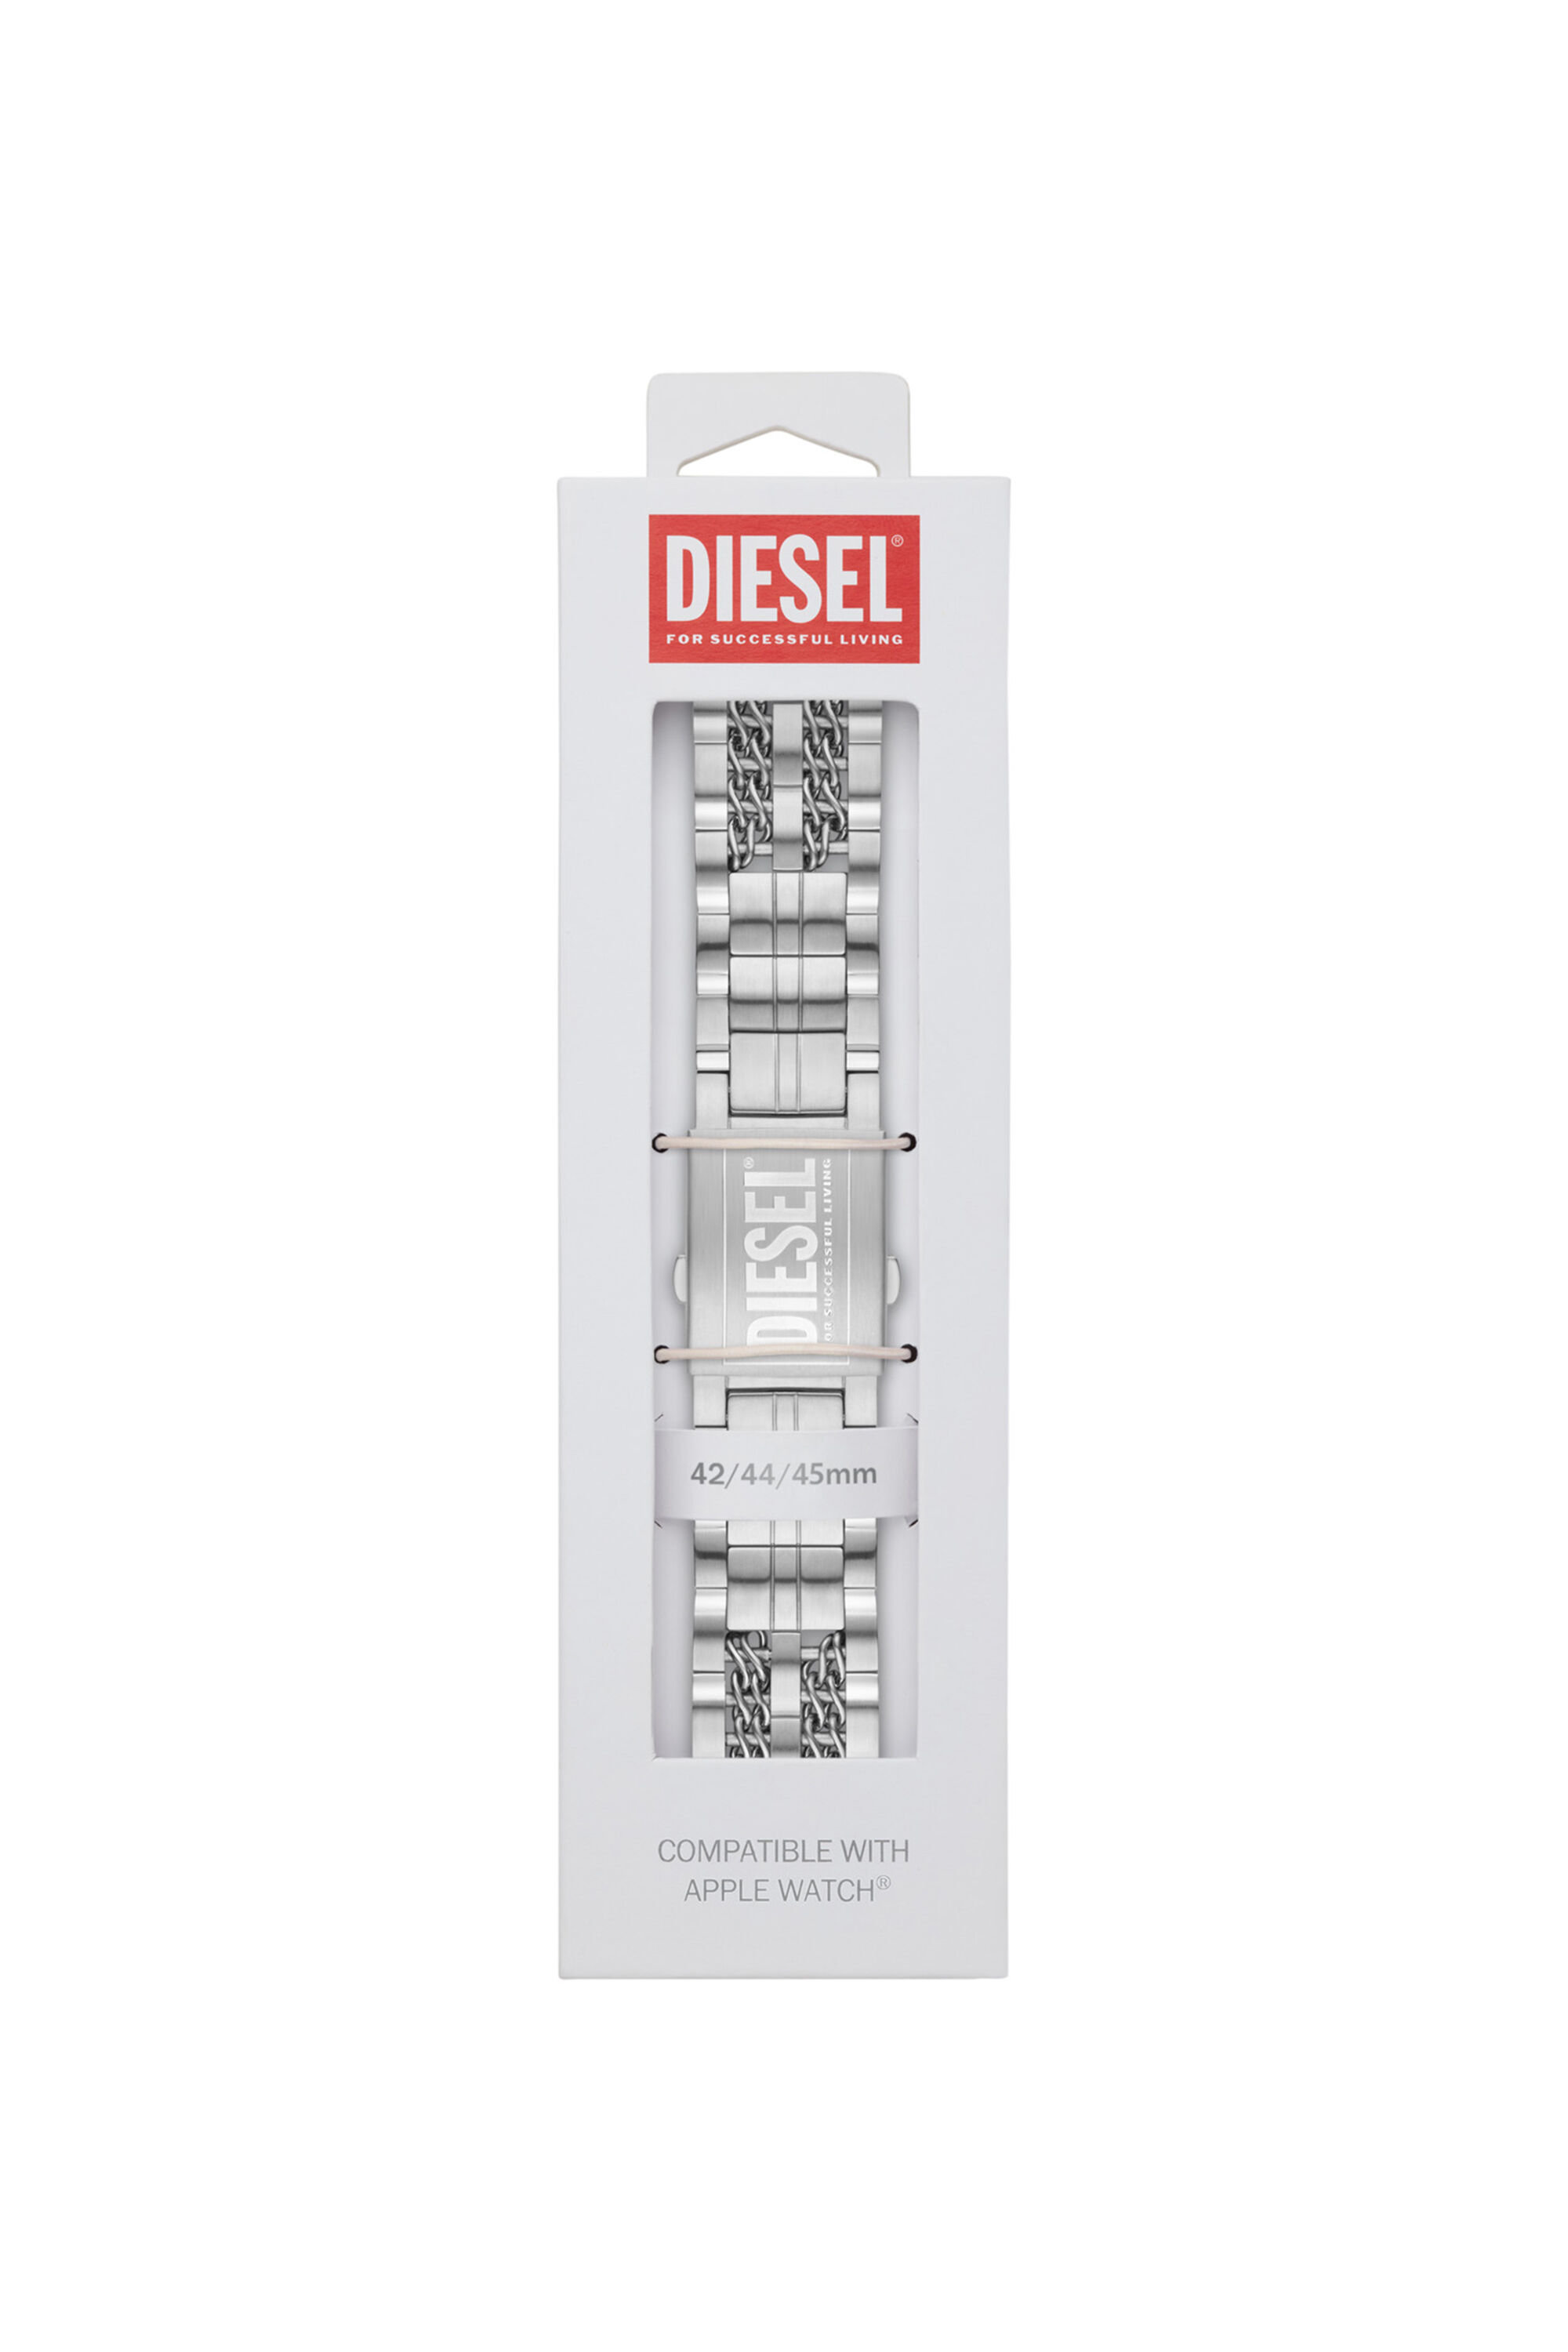 Diesel - DSS008, グレー - Image 2